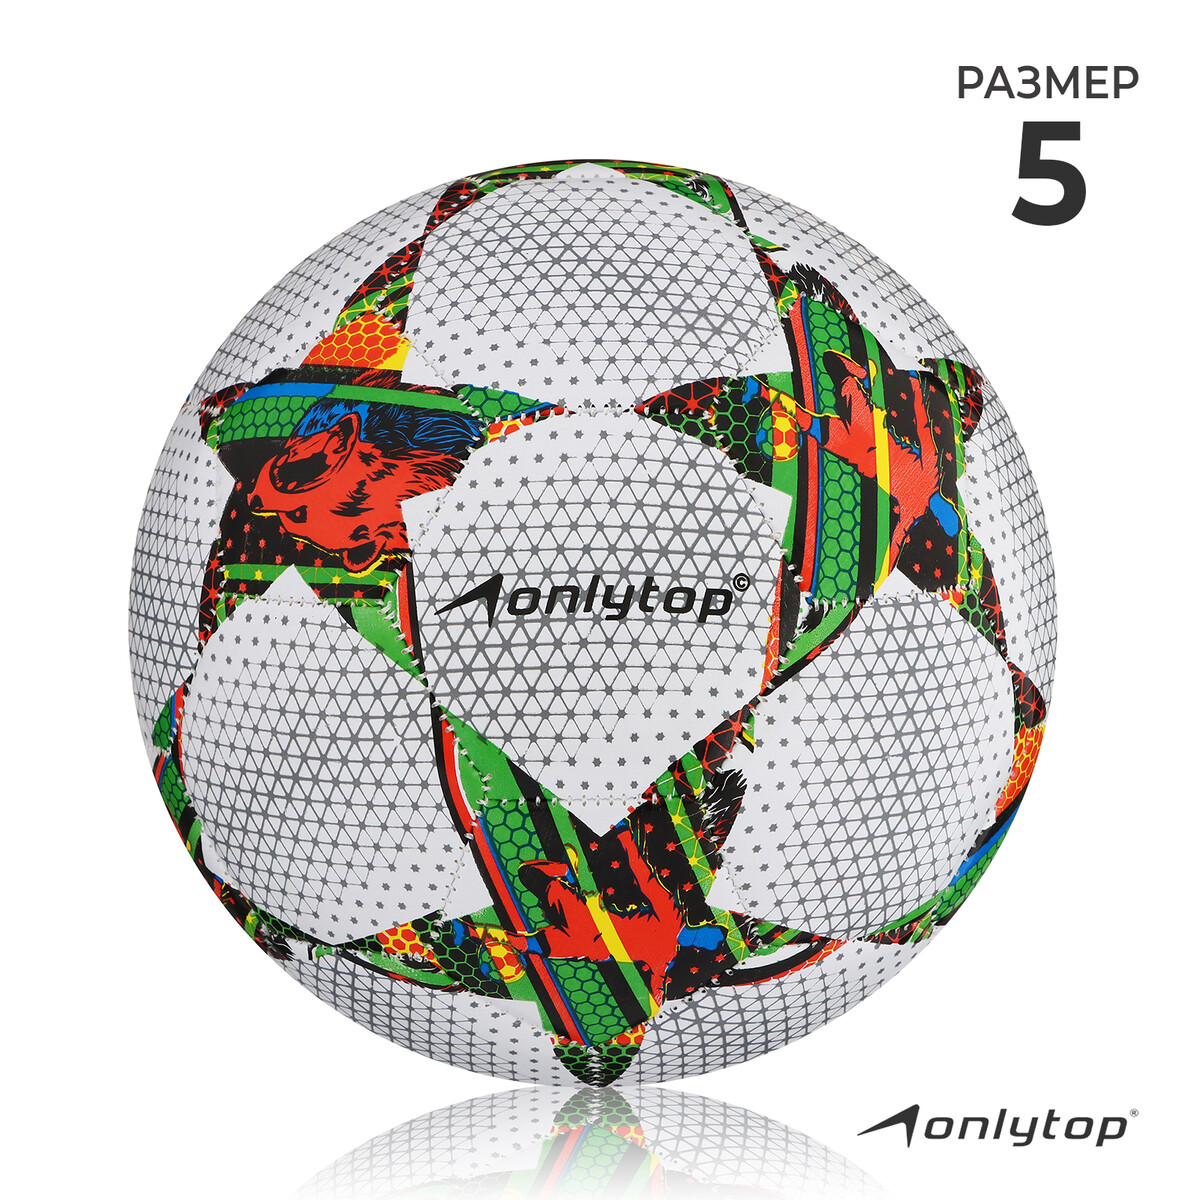 Мяч футбольный onlytop, пвх, машинная сшивка, 32 панели, размер 5, 310 г мяч футбольный onlytop pvc машинная сшивка 32 панели р 4